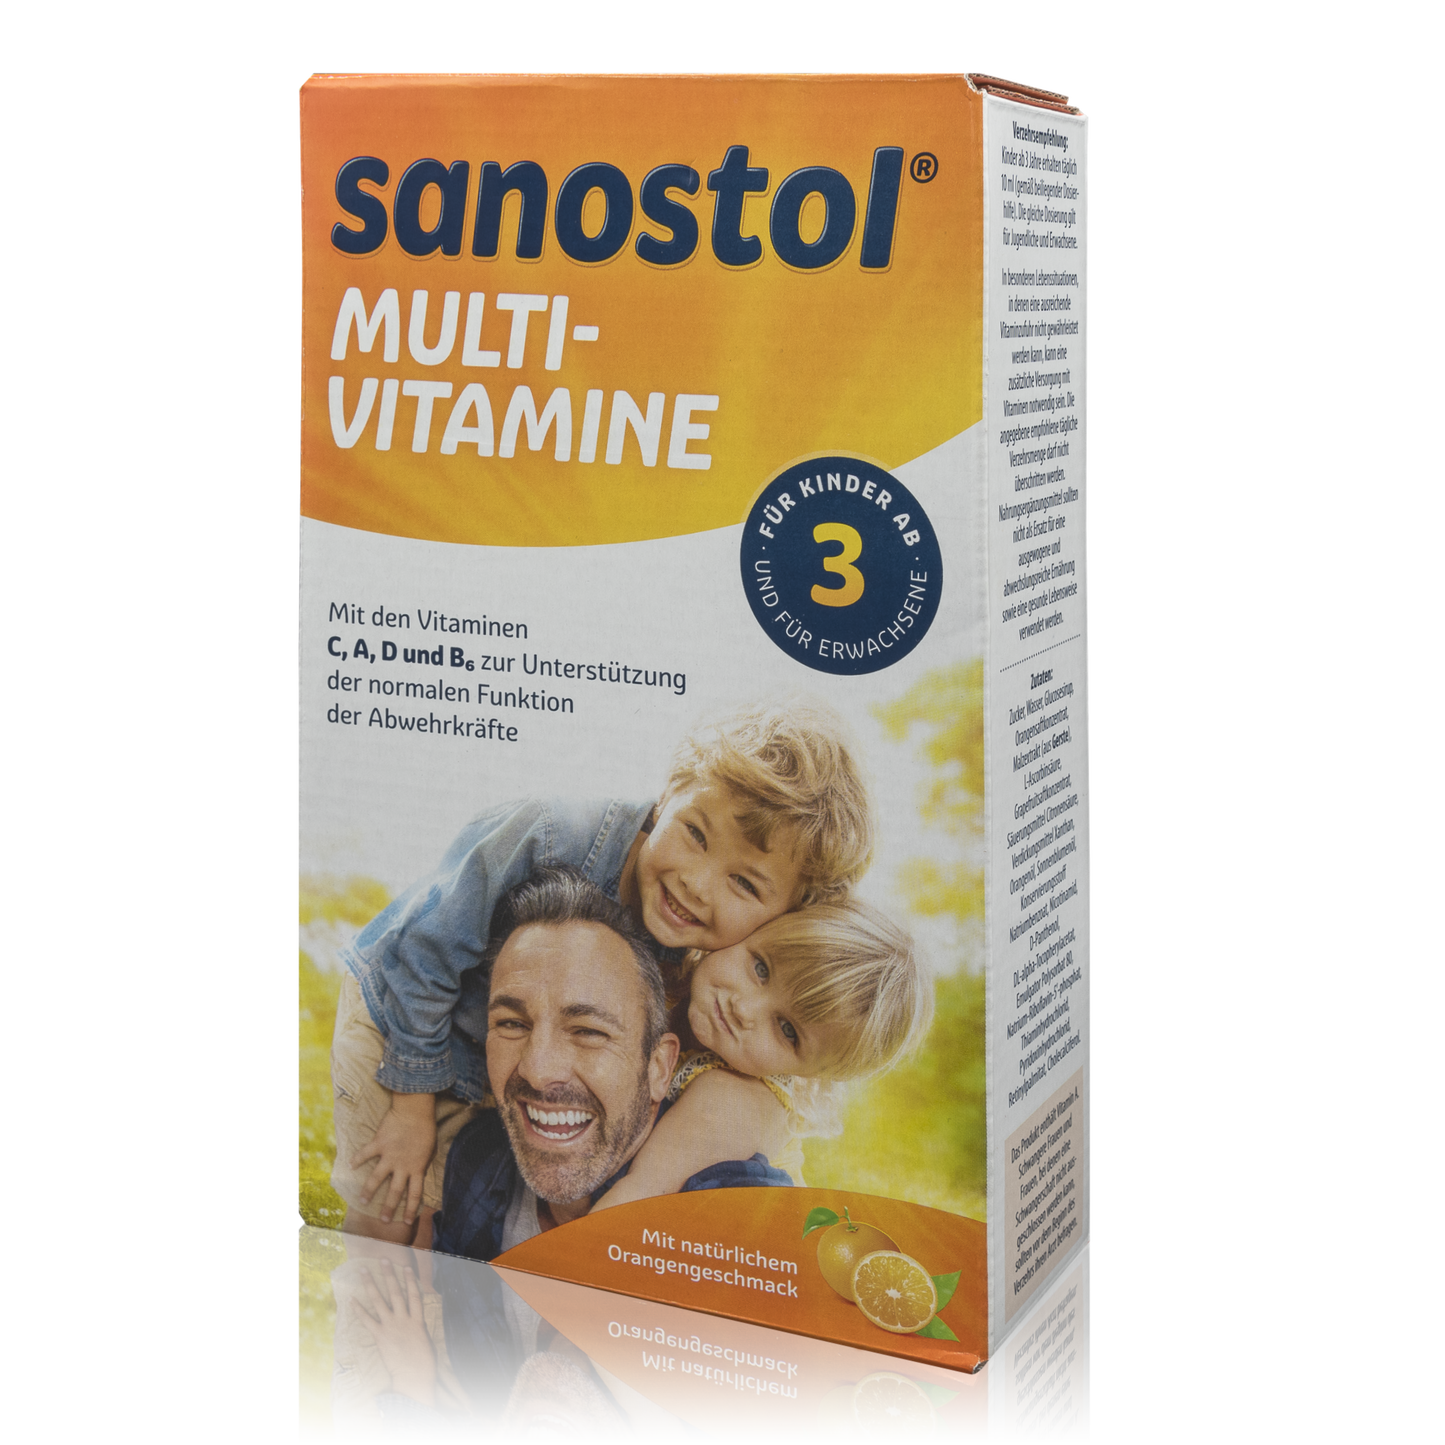 Sanostol Multi-Vitamine (460ml) - PZN: 2171817 - RoTe Place